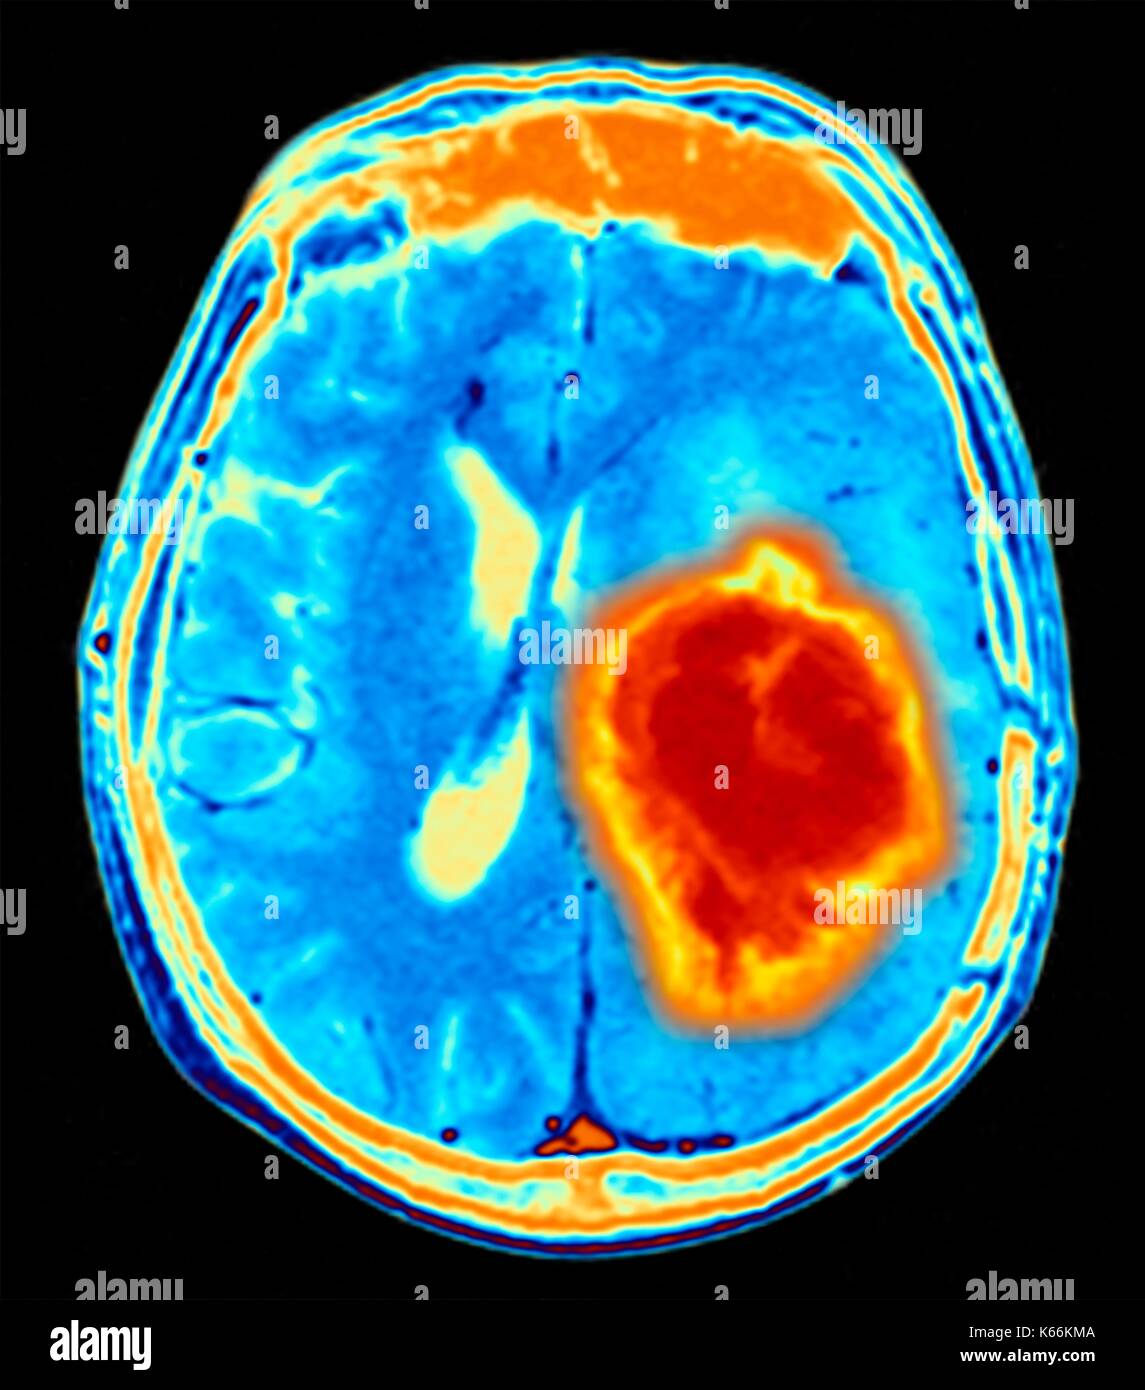 Tumore del cervello. Colorato di Risonanza Magnetica (RM) scansione di una sezione assiale attraverso il cervello che mostra un tumore metastatico. In basso a sinistra è il tumore (rosso-giallo) questo tumore si verifica entro un emisfero cerebrale; l'altro emisfero è a destra. I bulbi oculari - non visibile - sono al top. Il cancro metastatico è una malattia secondaria la diffusione di cancro altrove nel corpo. Metastatica di tumori cerebrali sono maligni. Tipicamente essi provocano la compressione del cervello e danni ai nervi Foto Stock